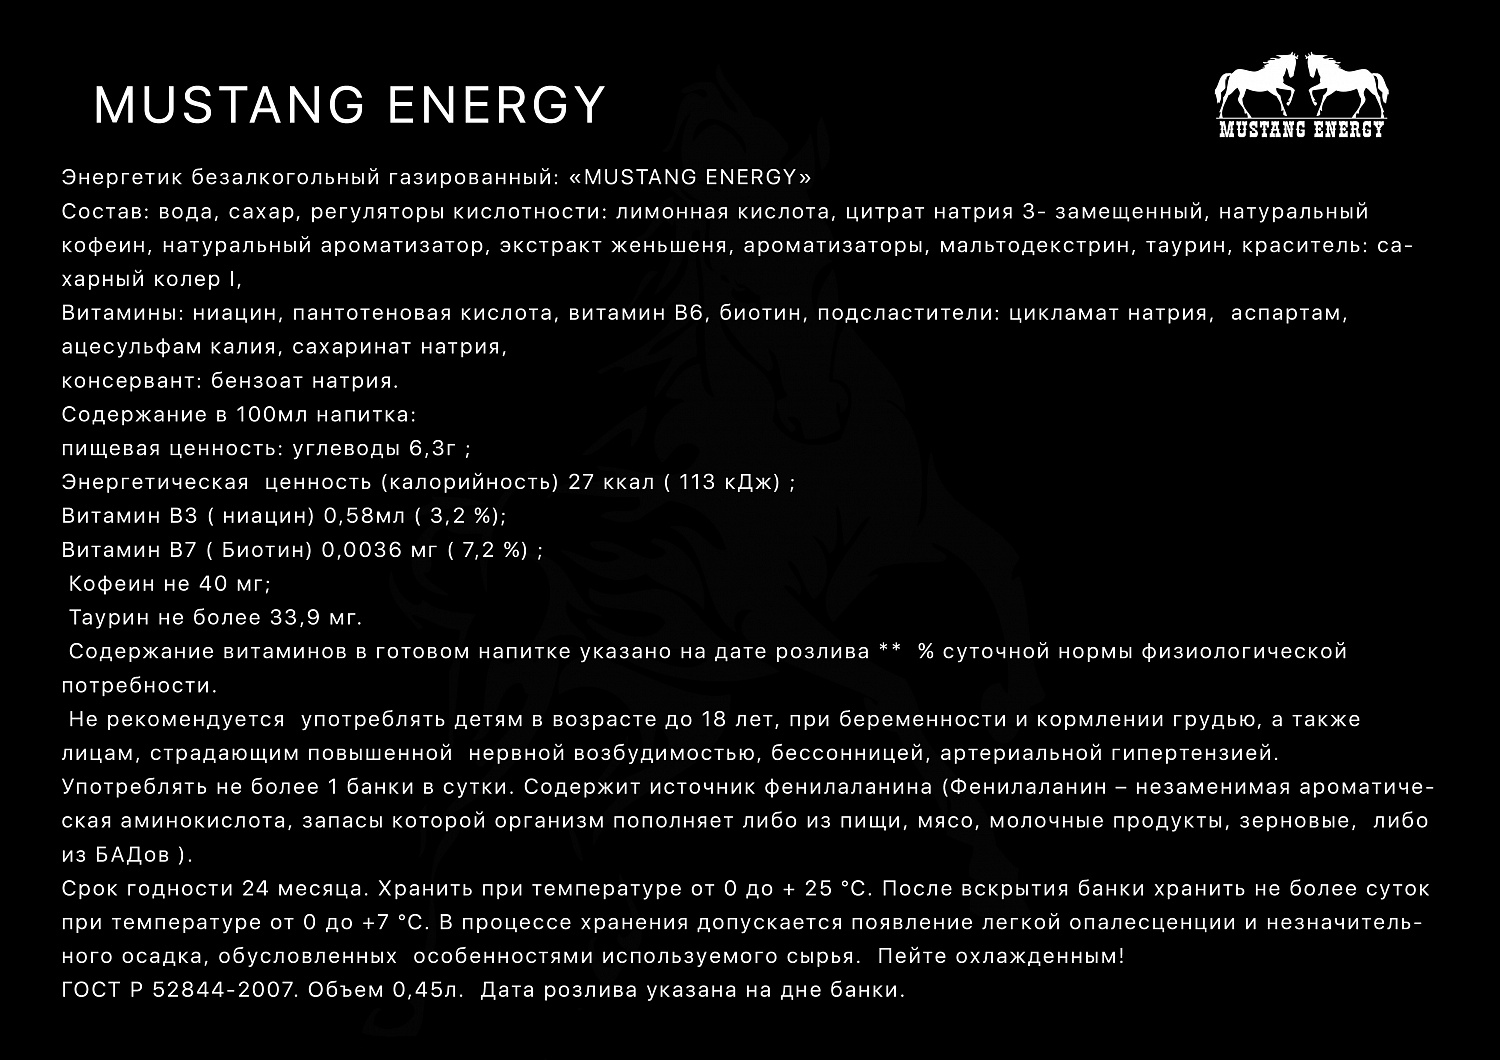 Mustang Energy - Продукты питания Сочи SOCHI.com